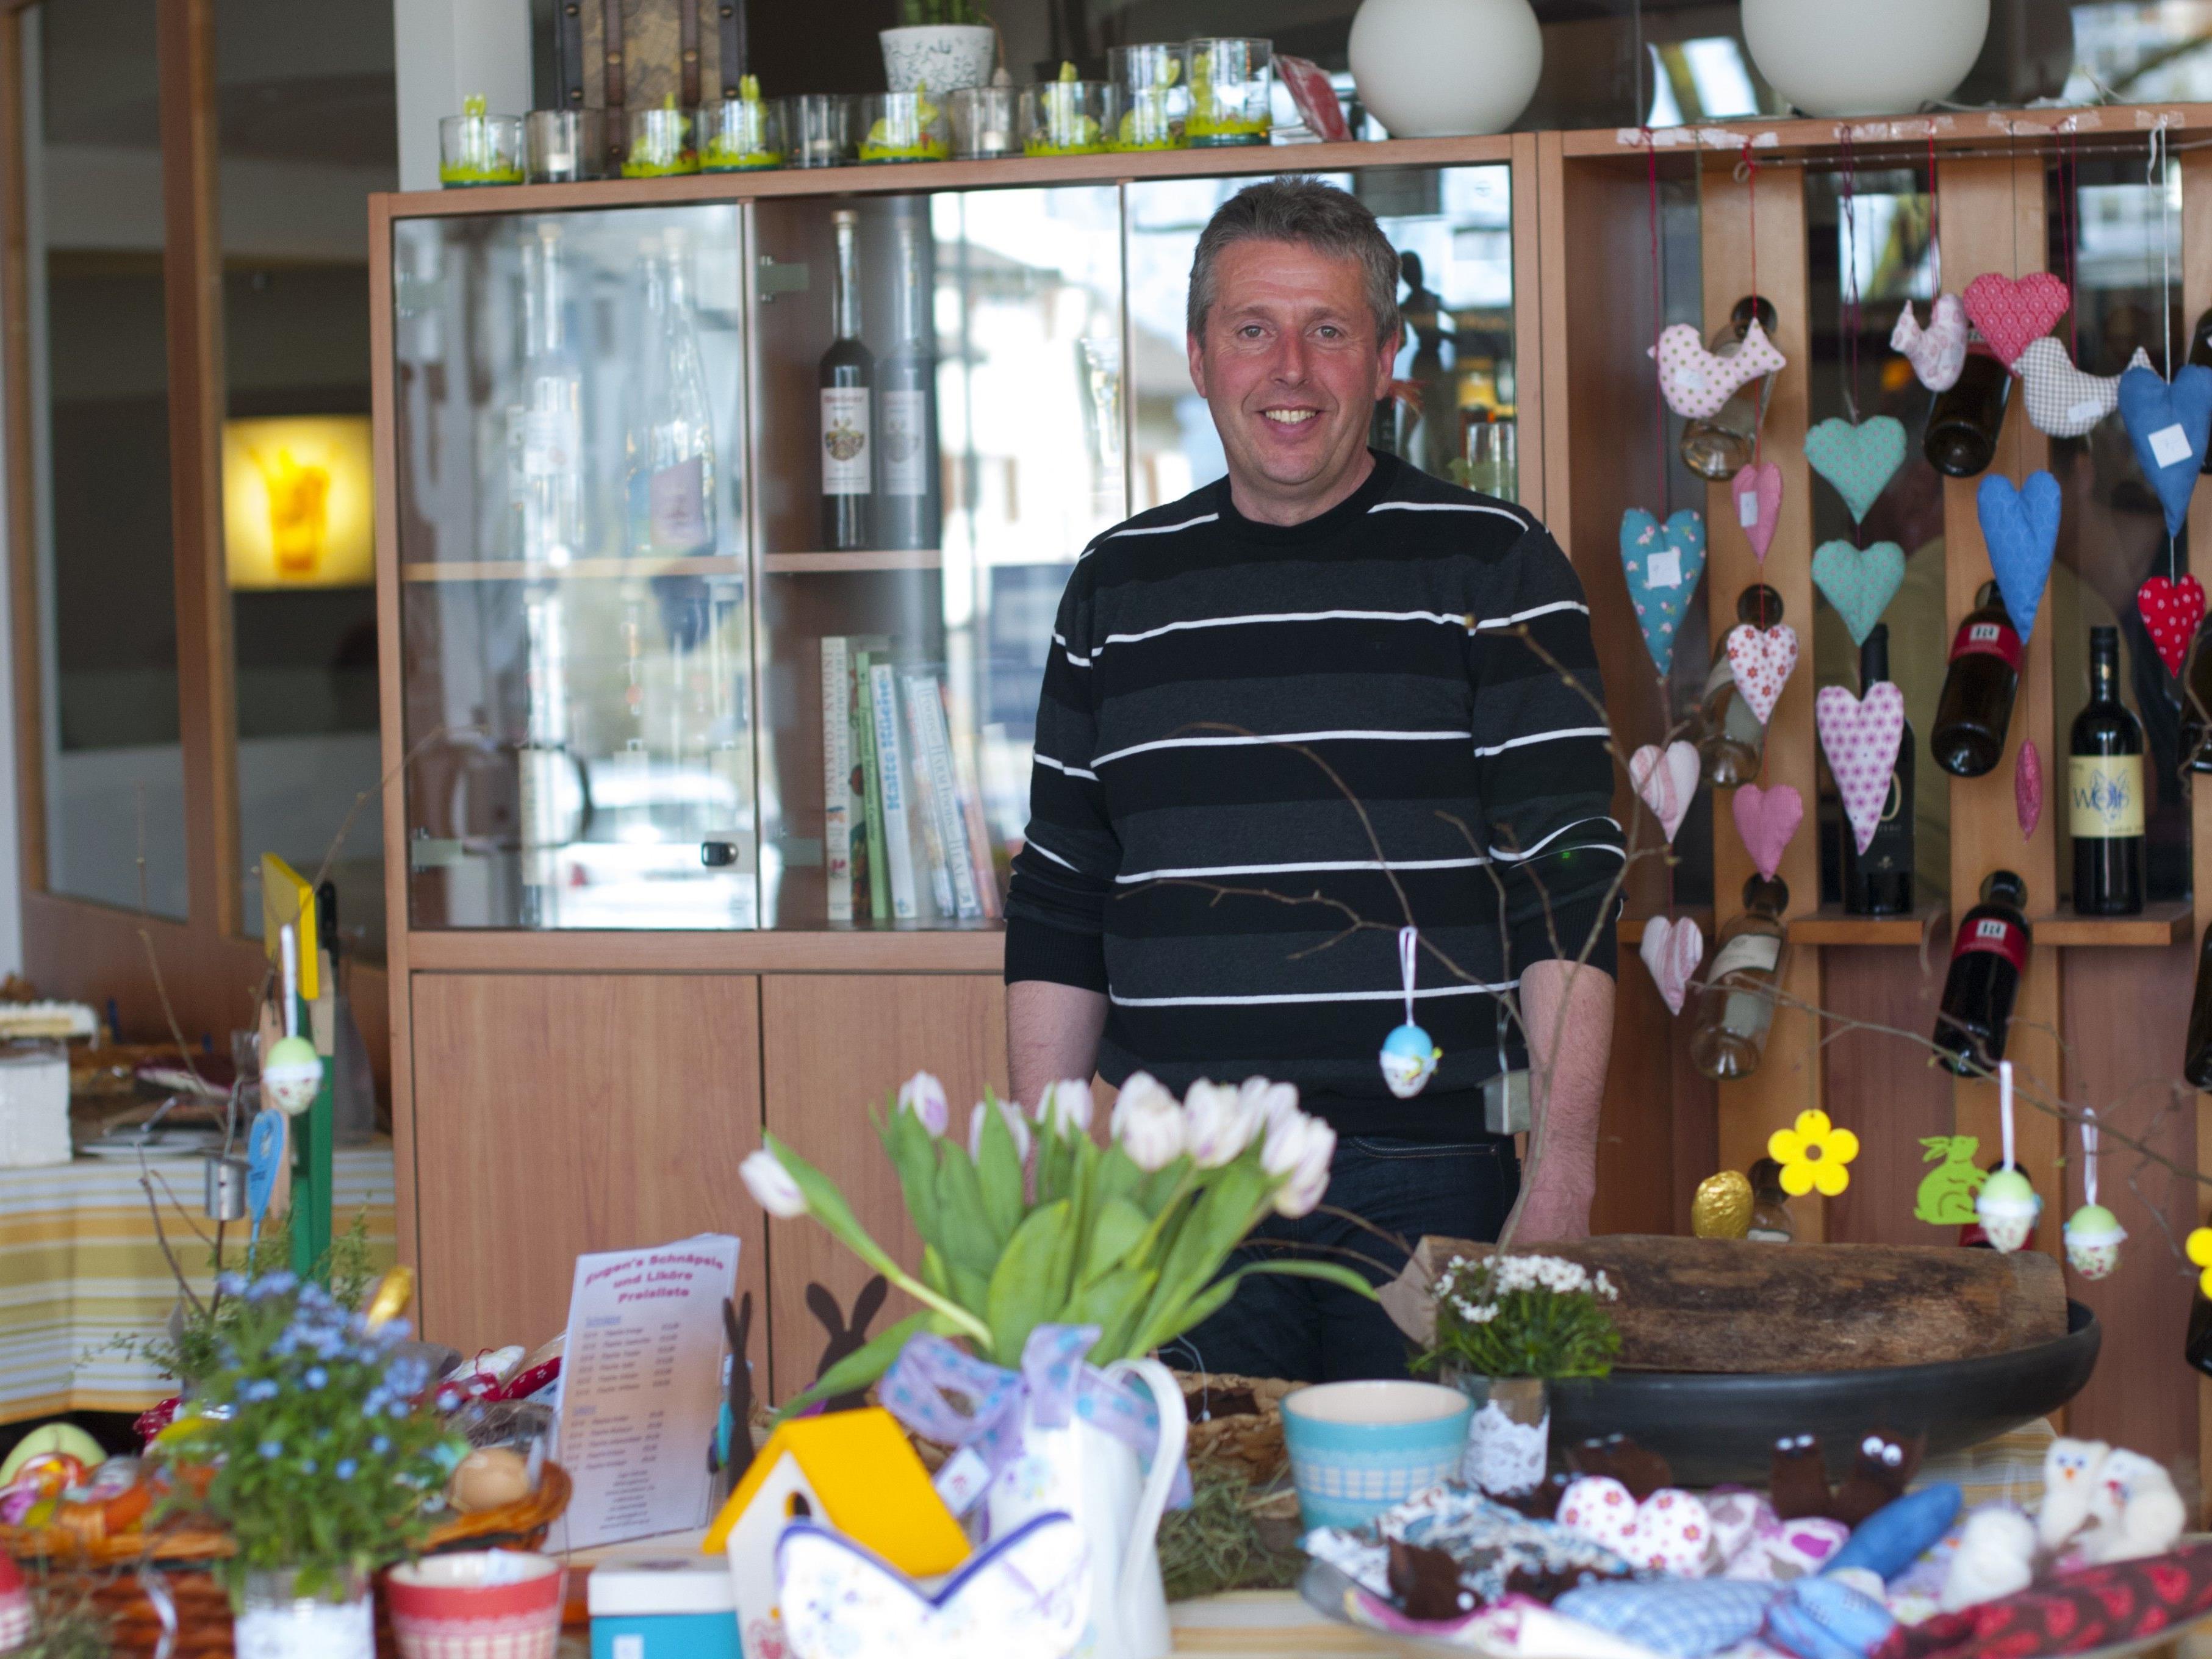 Christian Bösch vom Projekt Herzenssache freut sich am Sonntag auf zahlreiche Besucher beim Osterbasar, die mit ihrem Einkauf wieder Gutes tun.